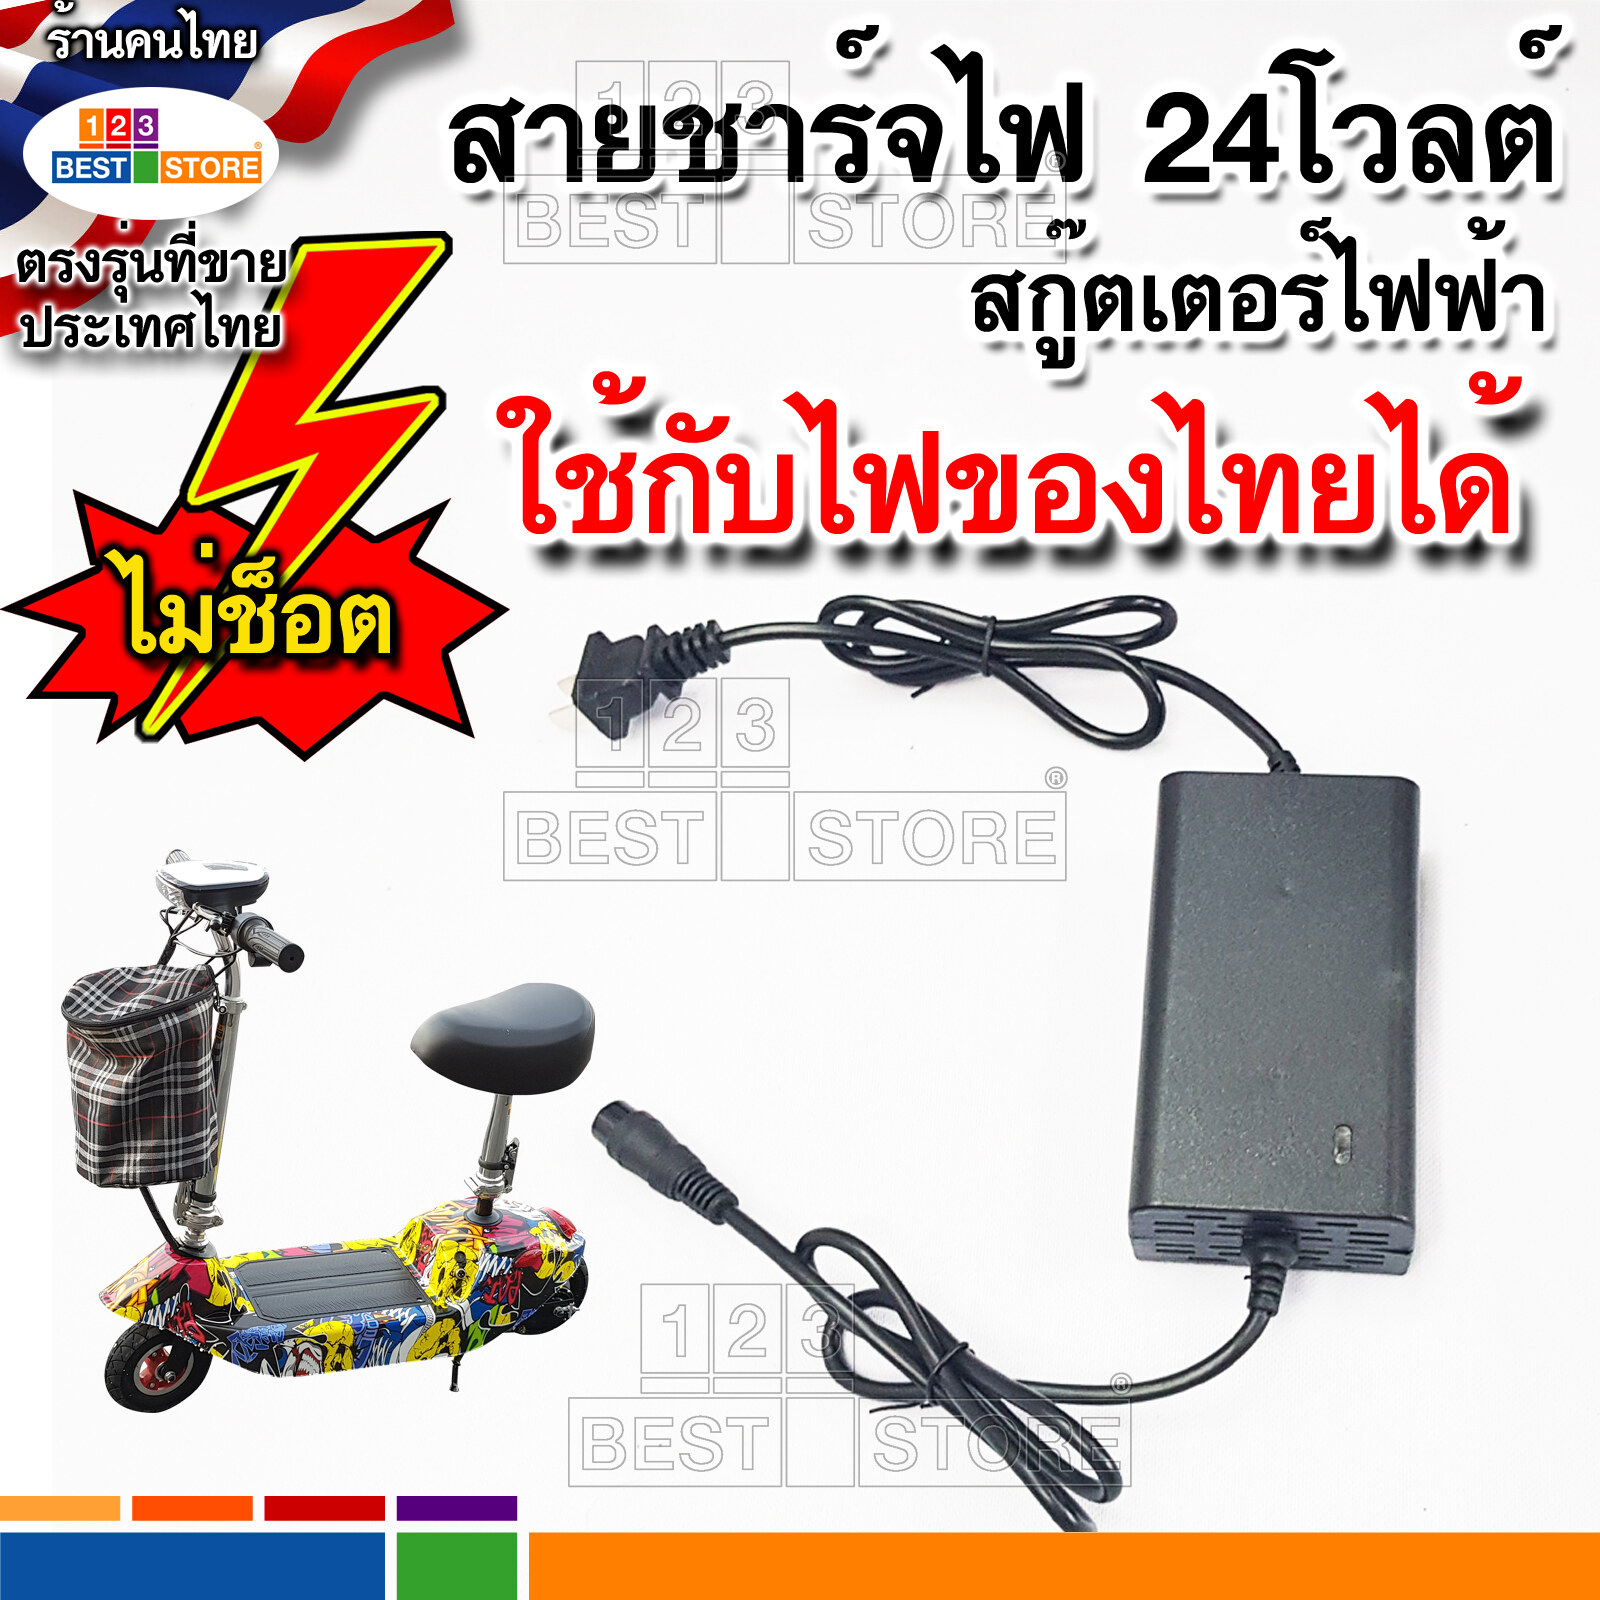 อะไหล่ (ทดสอบก่อนส่งทุกชิ้น) สายชาร์จไฟสกู๊ตเตอร์ไฟฟ้า24V [ตรงรุ่น] ไม่ช๊อตใช้กับไฟประเทศไทยได้ อะแดปเตอร์ชาร์จ หม้อแปลง Adapter Charger scooter